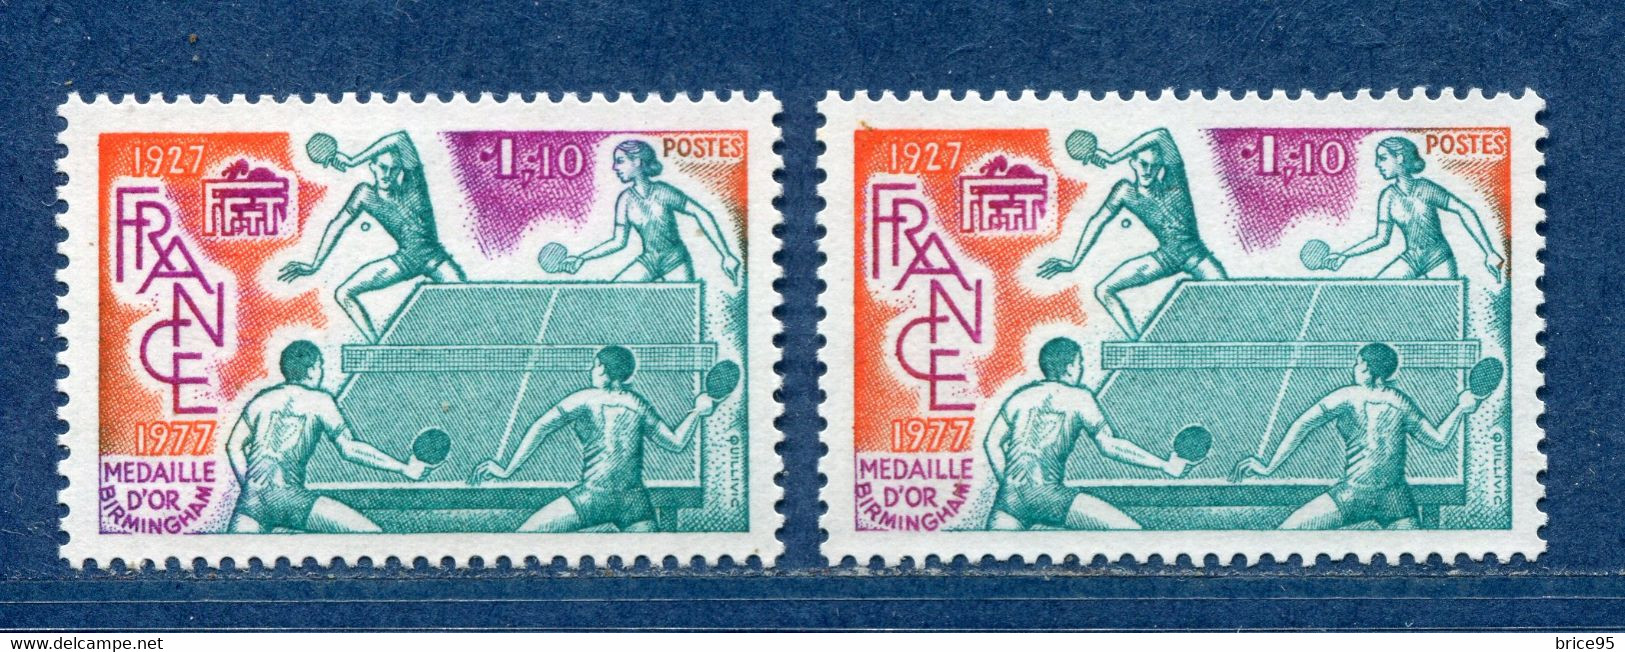 ⭐ France - Variété - YT N° 1961 - Couleurs - Pétouille - Neuf Sans Charnière - 1977 ⭐ - Neufs